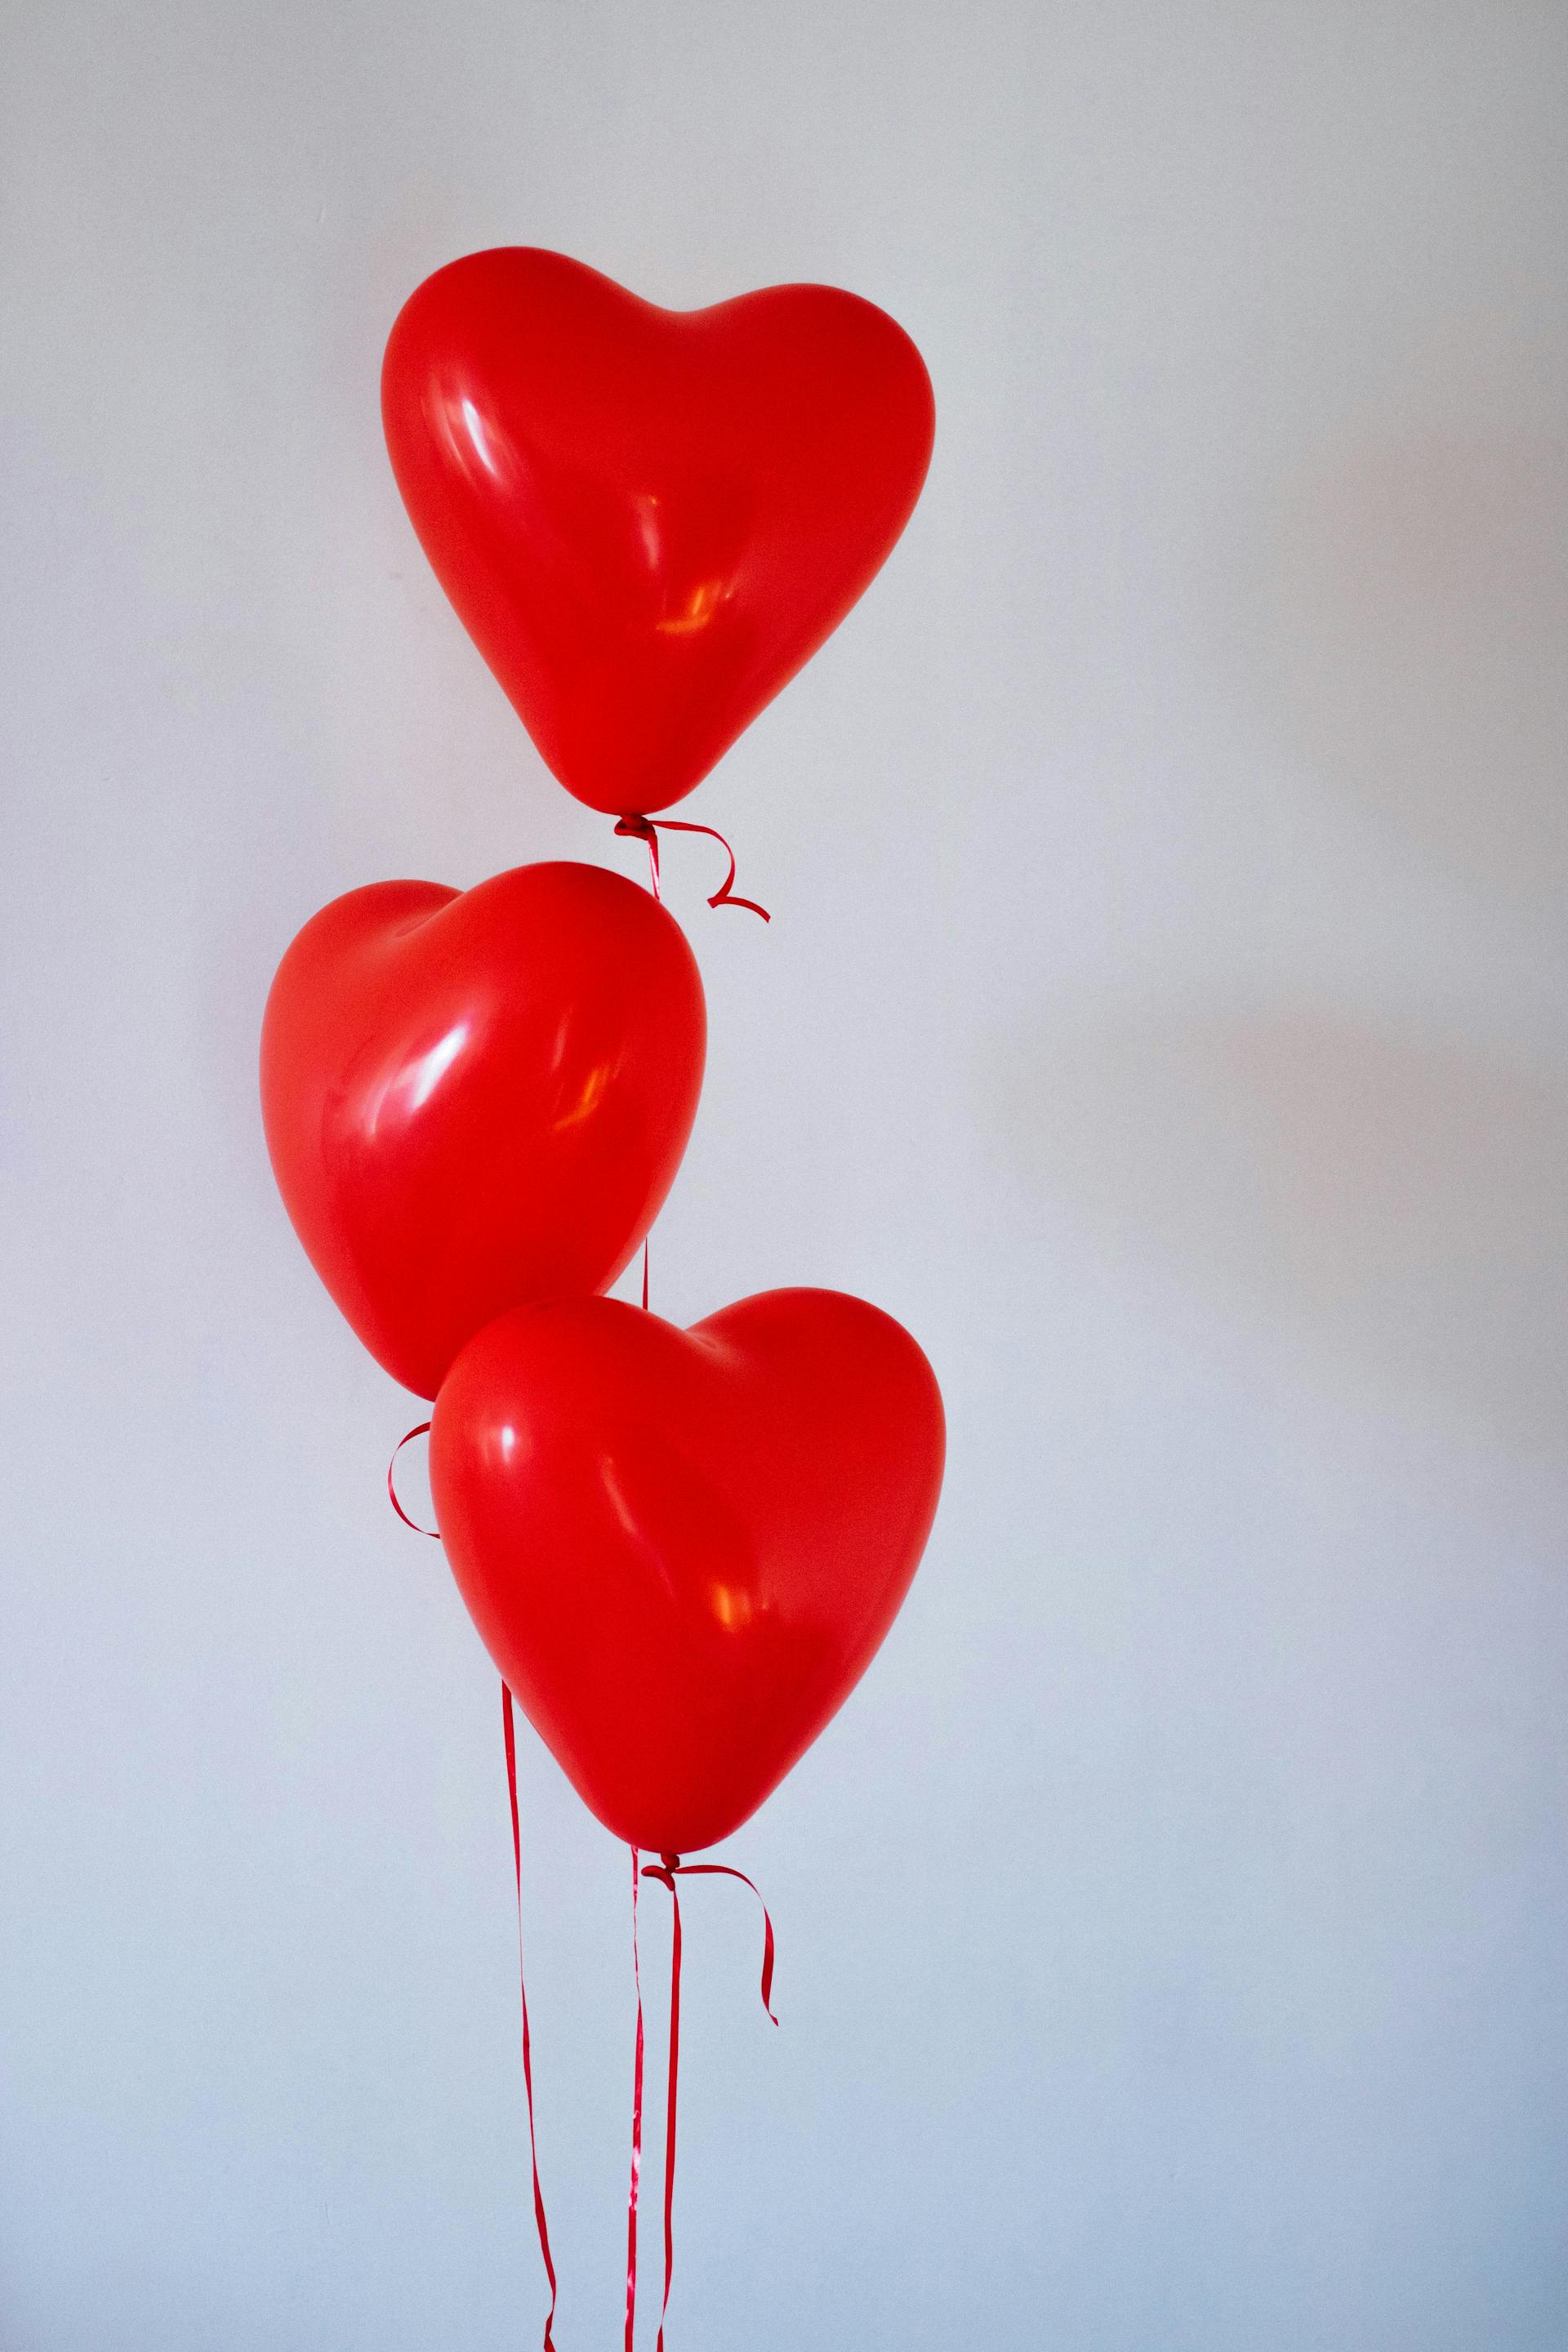 Drei rote herzförmige Luftballons | Quelle: Pexels